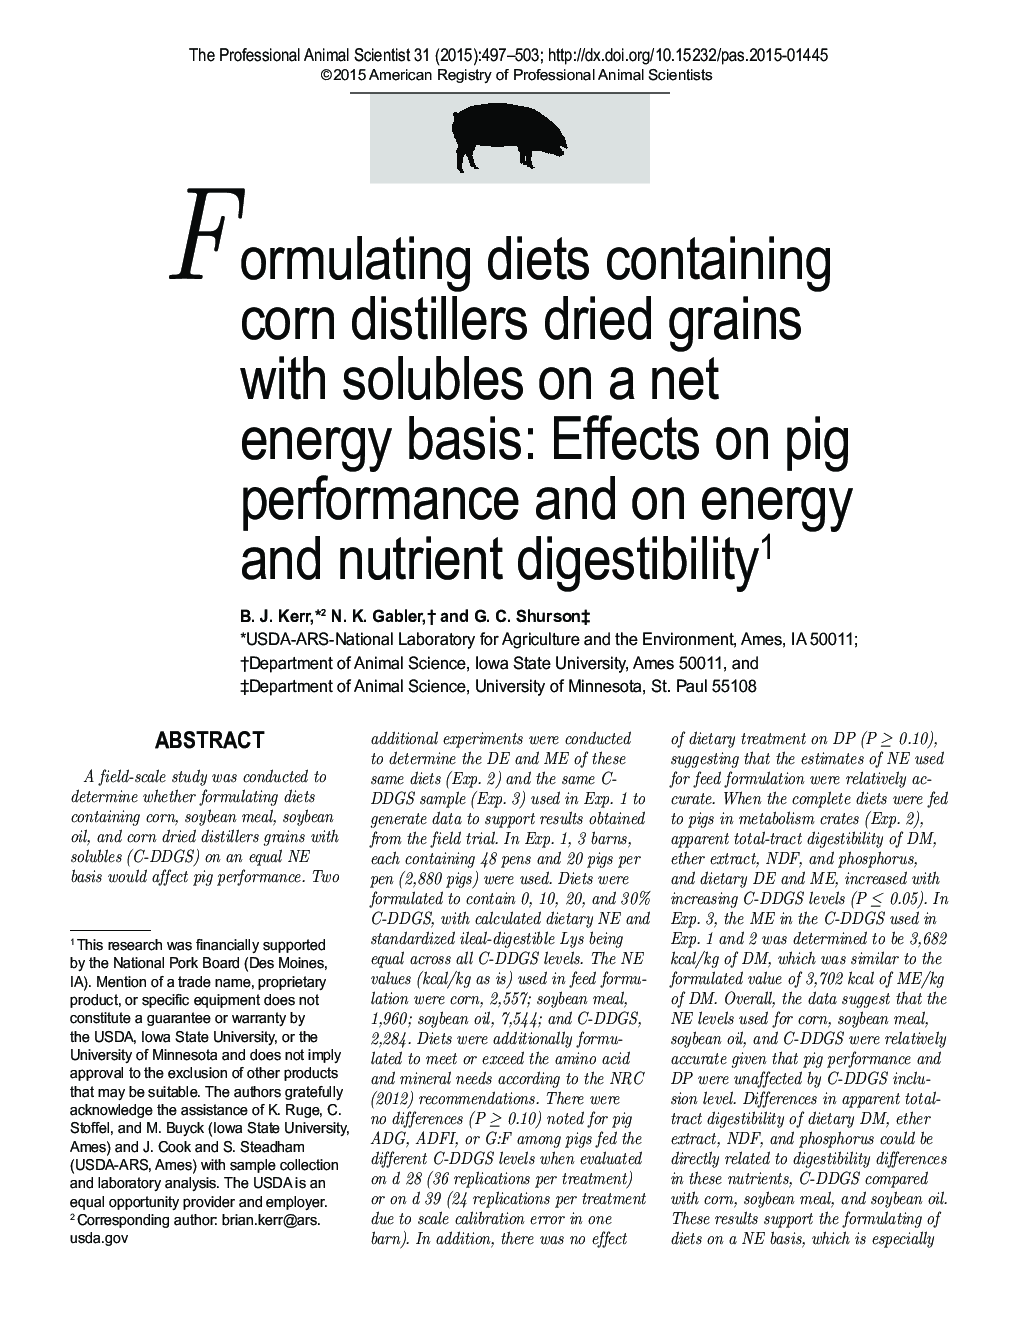 فرمول بندی رژیم های غذایی حاوی ذرت دانه های خشک شده با محلول های بر اساس انرژی خالص: تاثیر بر عملکرد خوک و انرژی و هضم غذای مغذی 1 